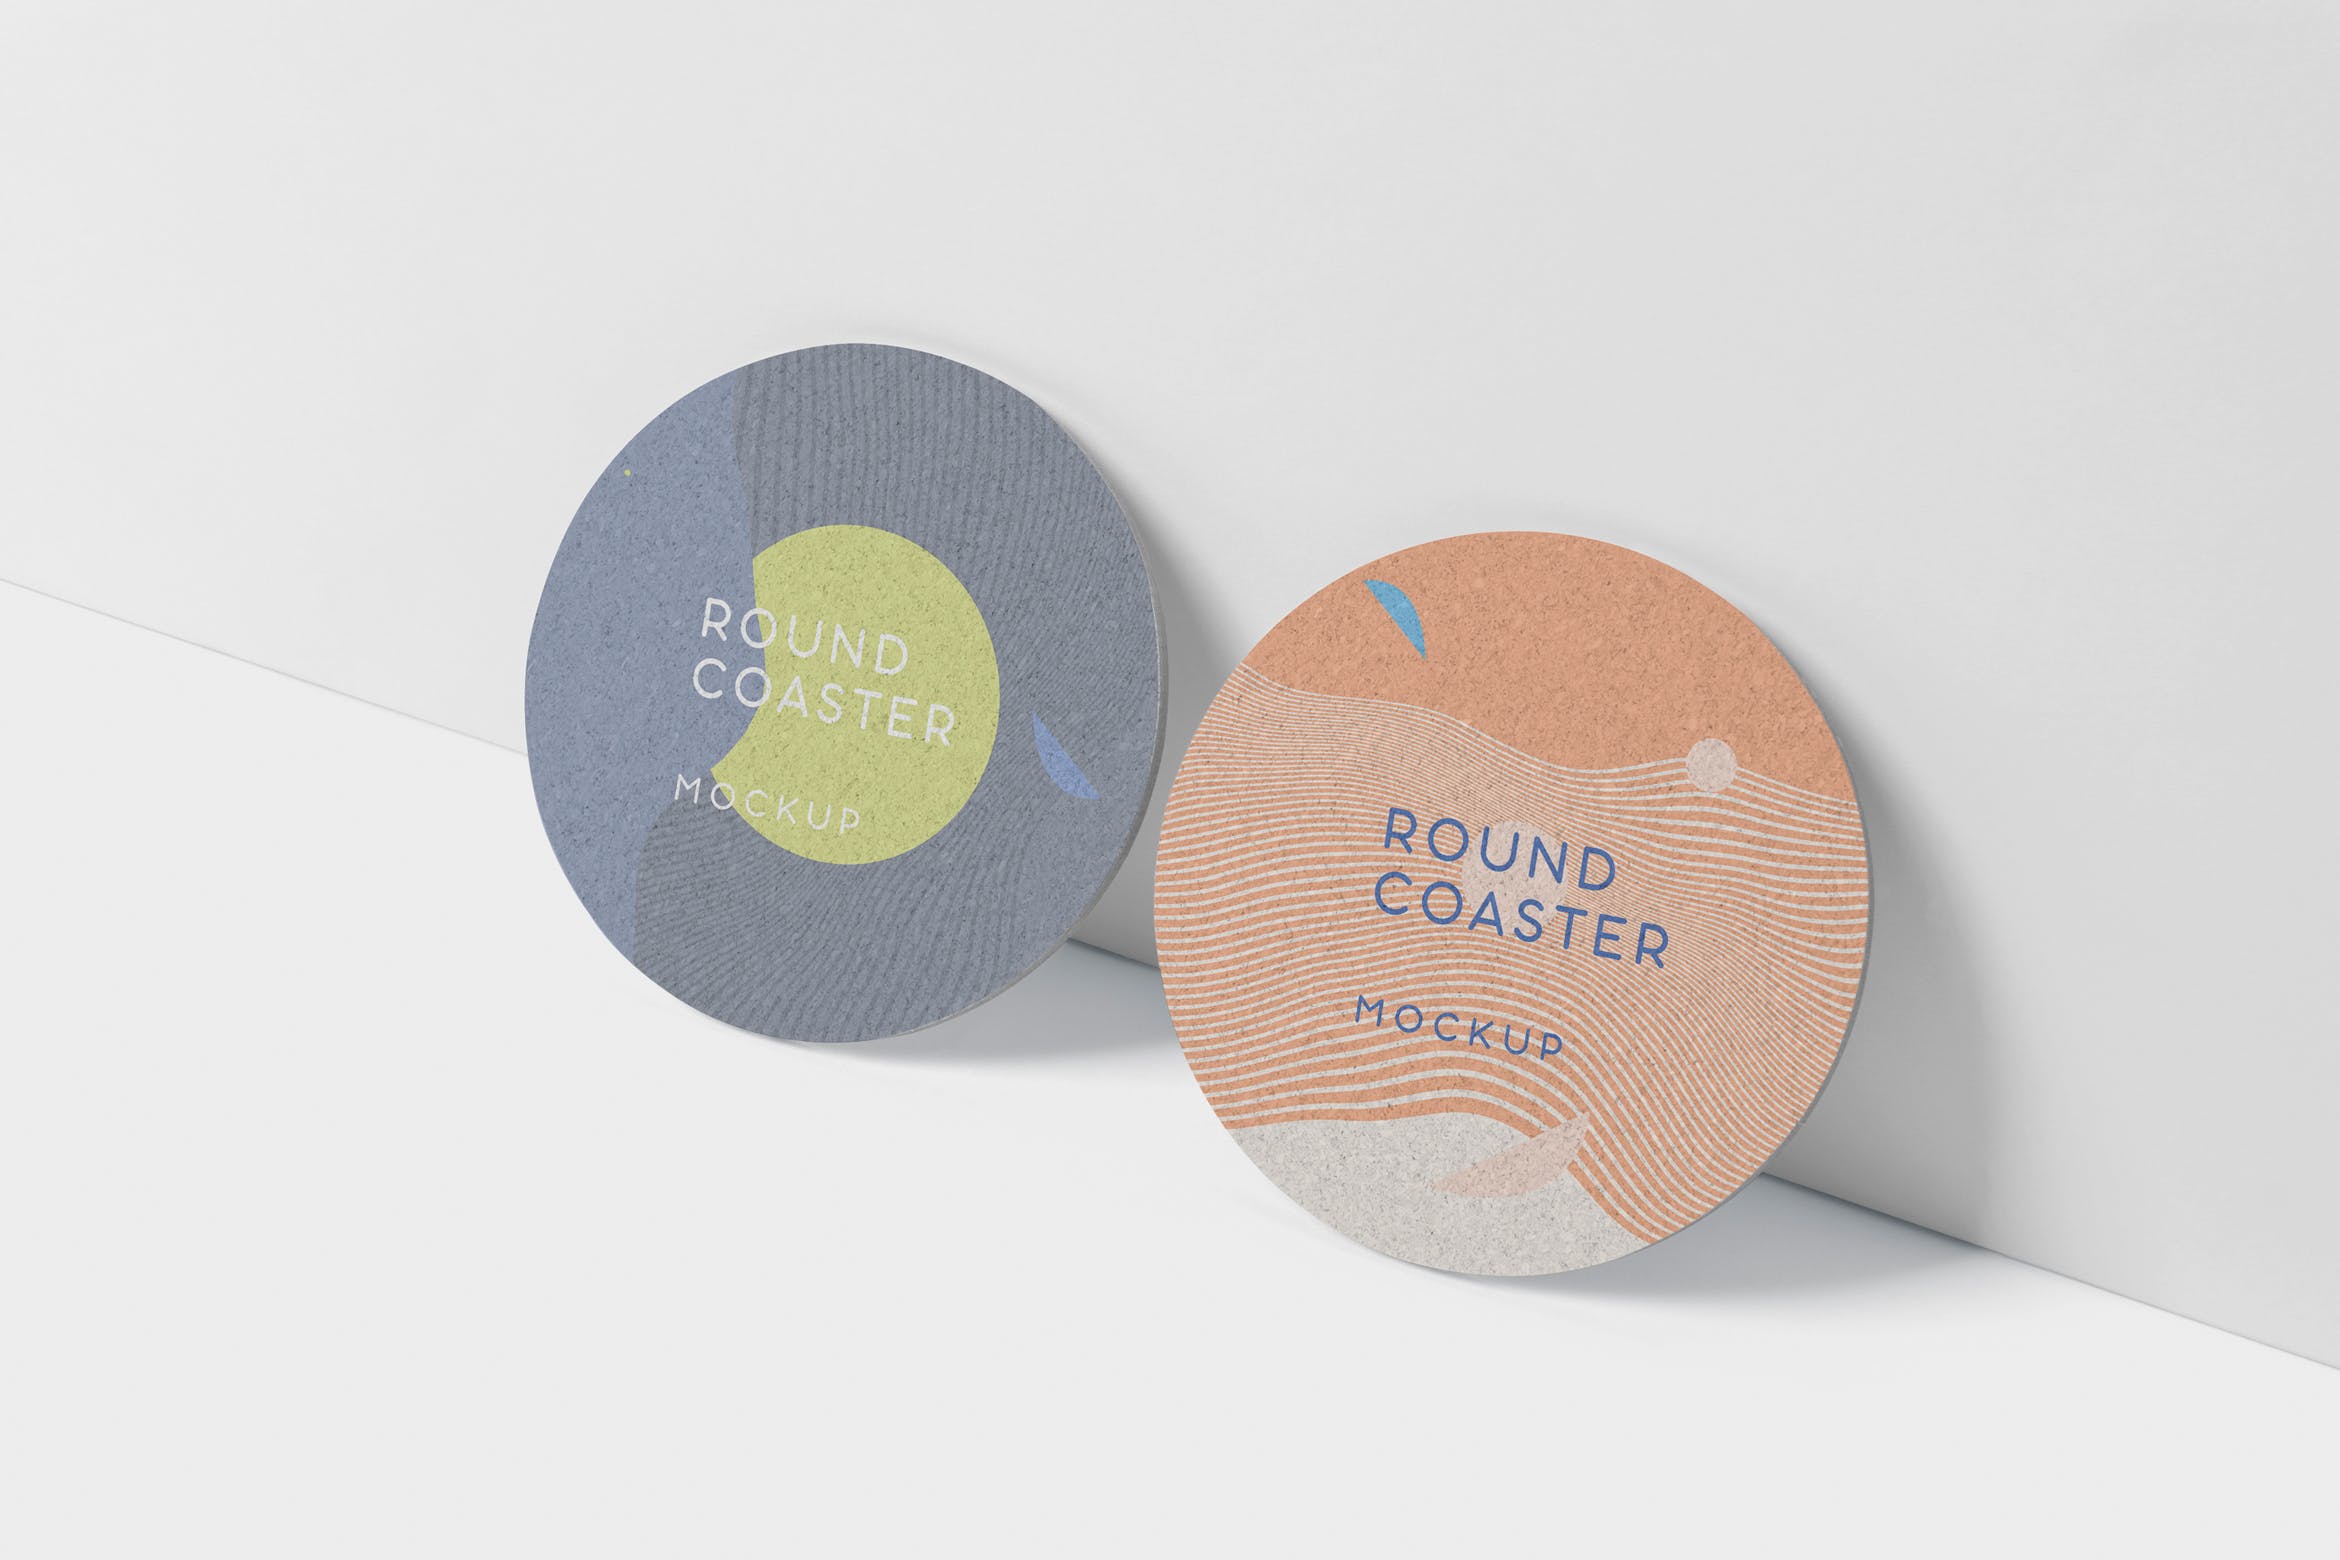 圆形杯垫图案设计效果图16设计网精选 Round Coaster Mock-Up – Medium Size插图